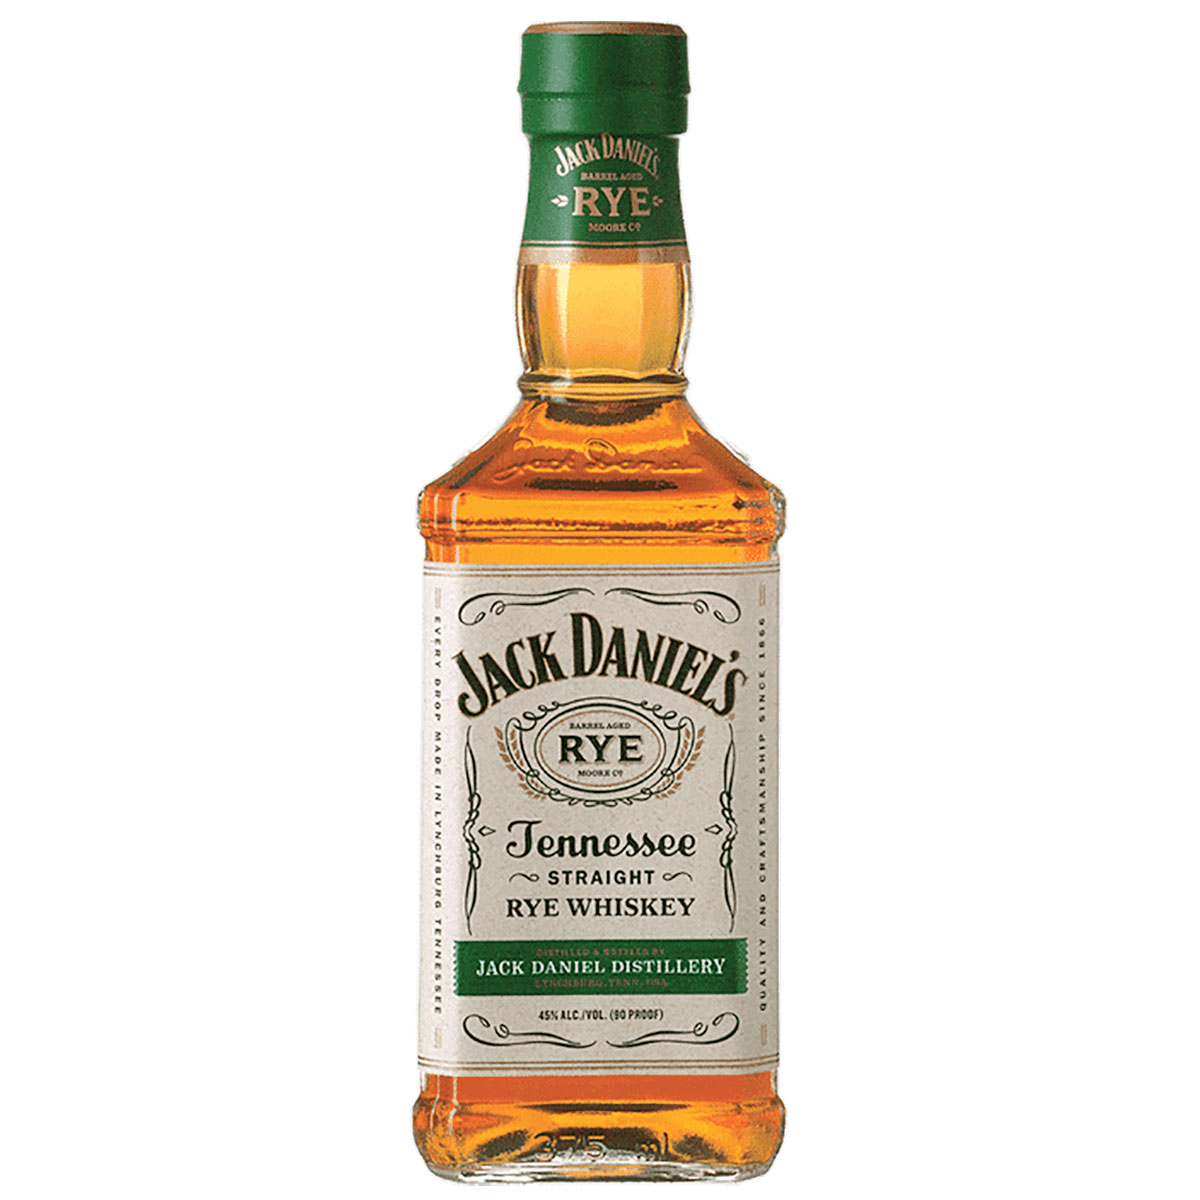 a bottle of jack daniels rye whisky